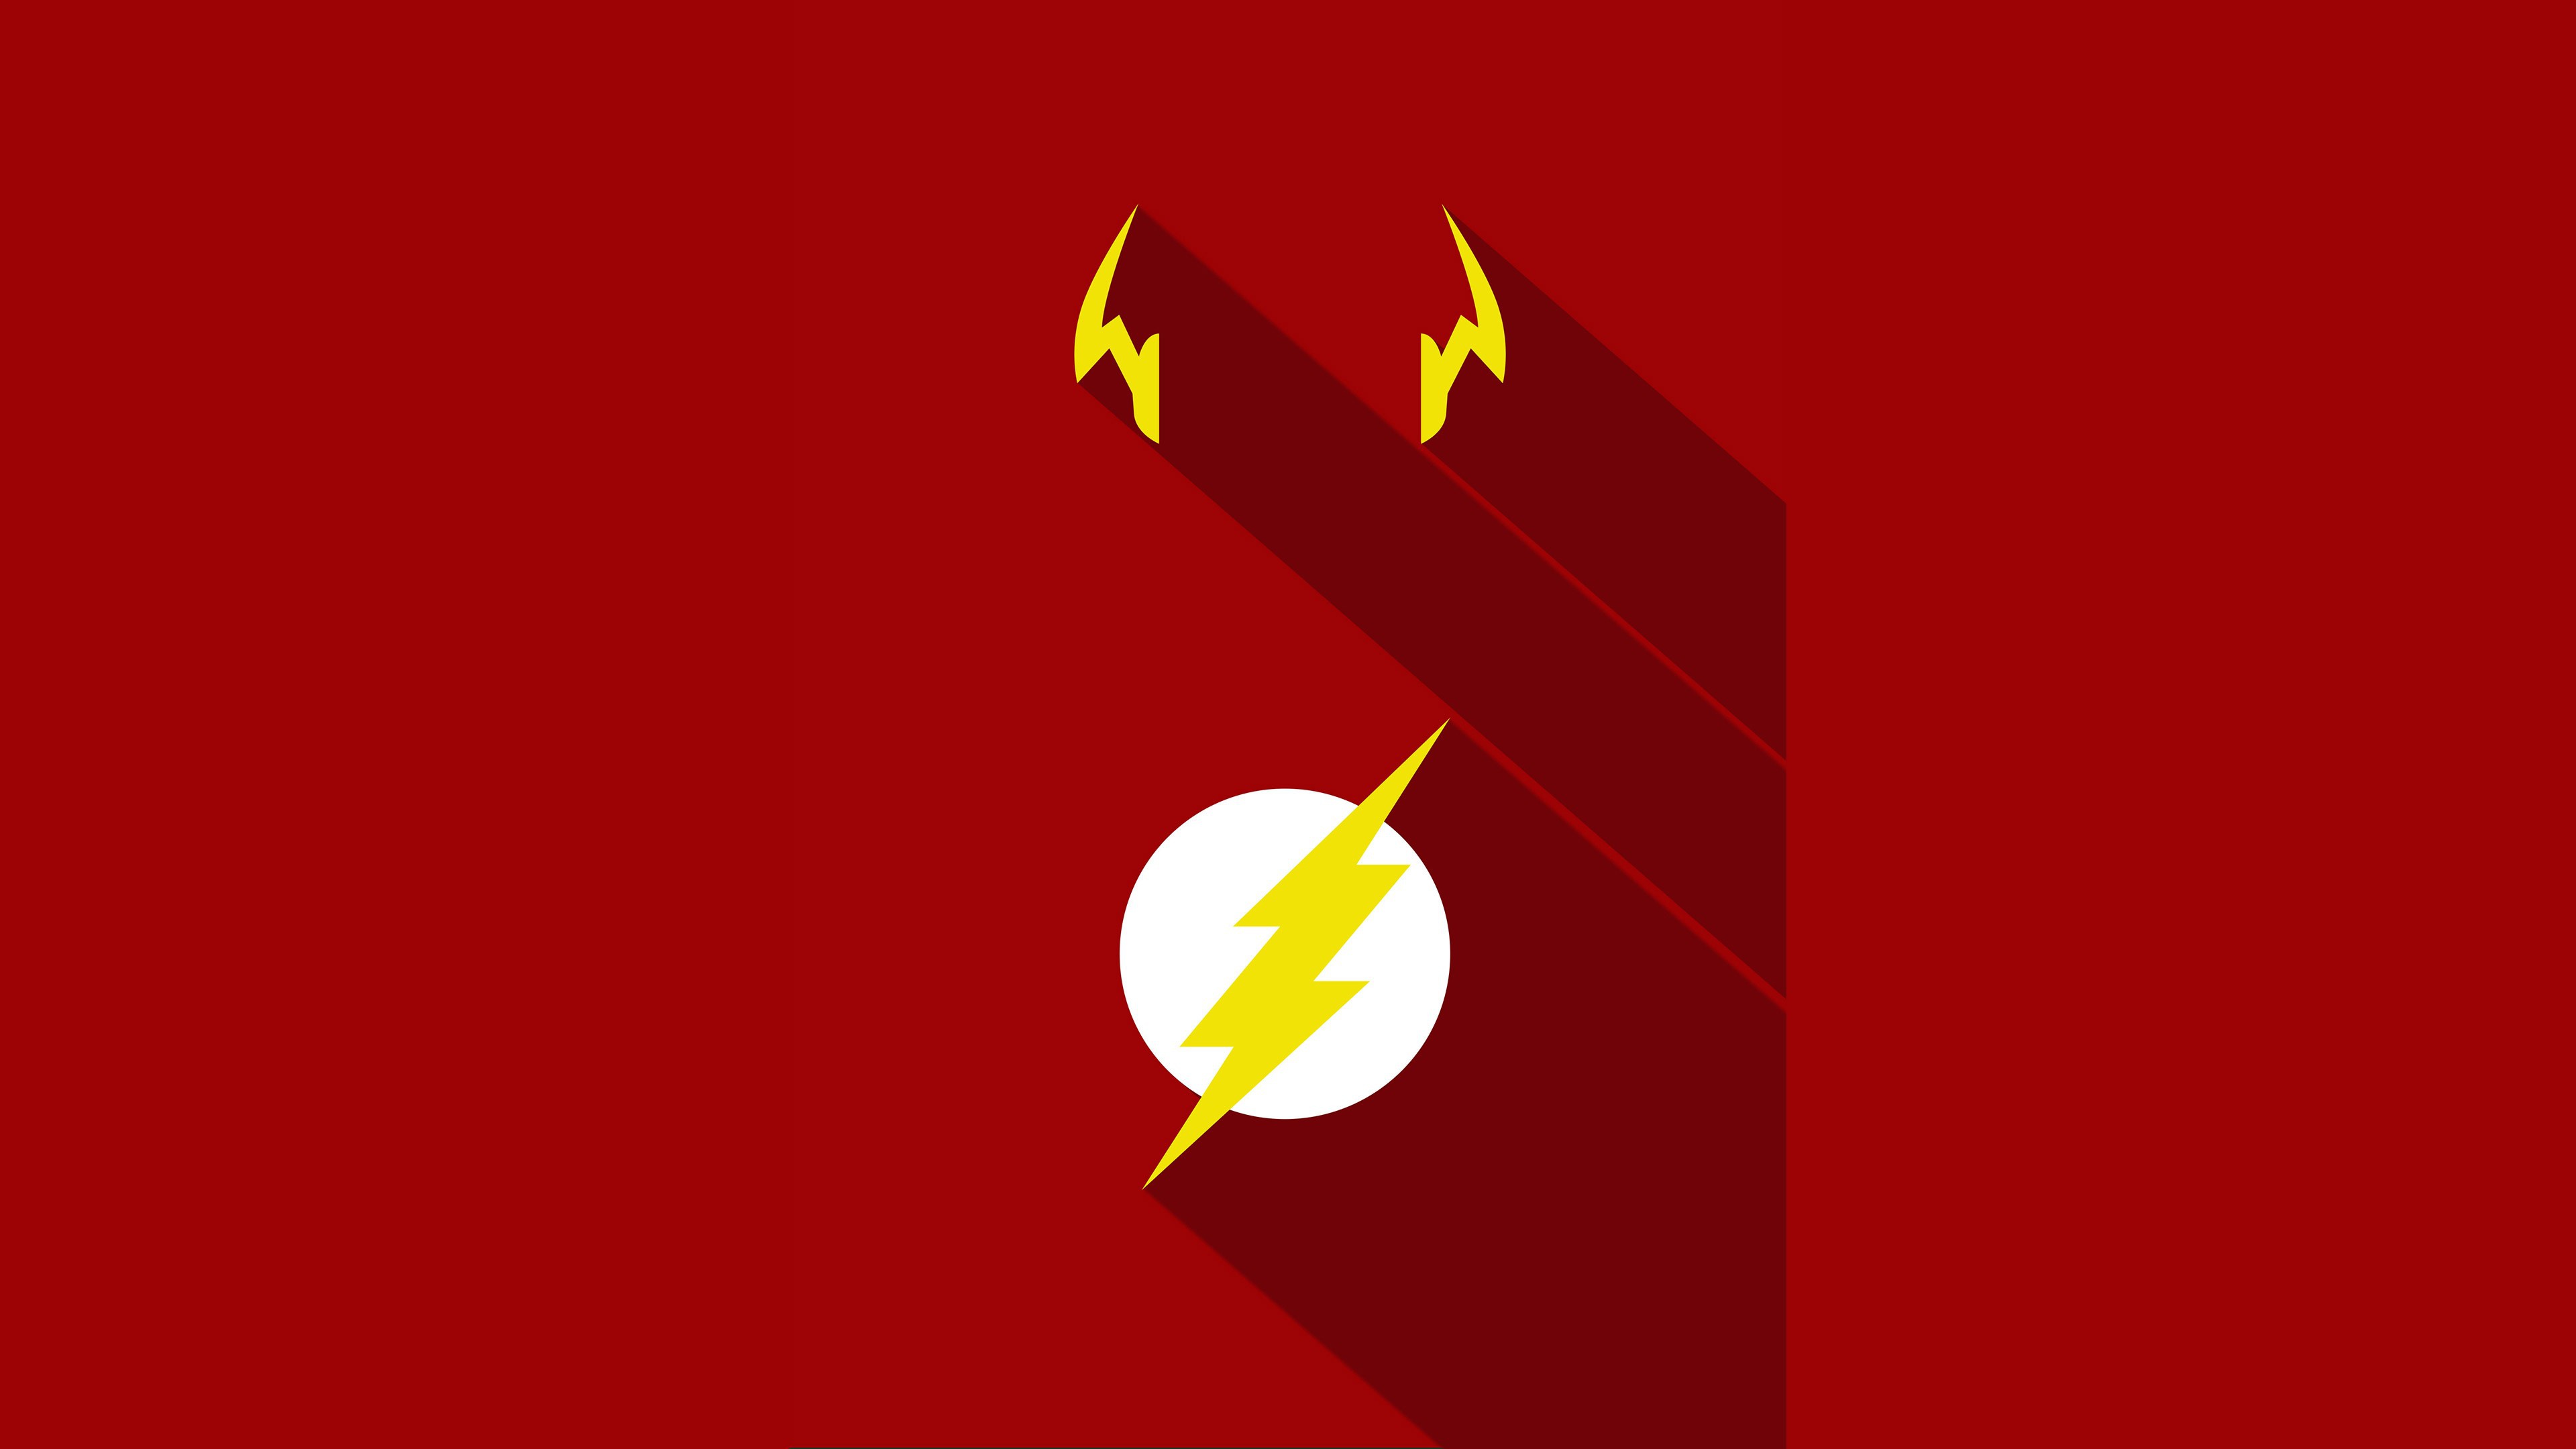 Dc Comics Flash Logo Minimalist 3840x2160